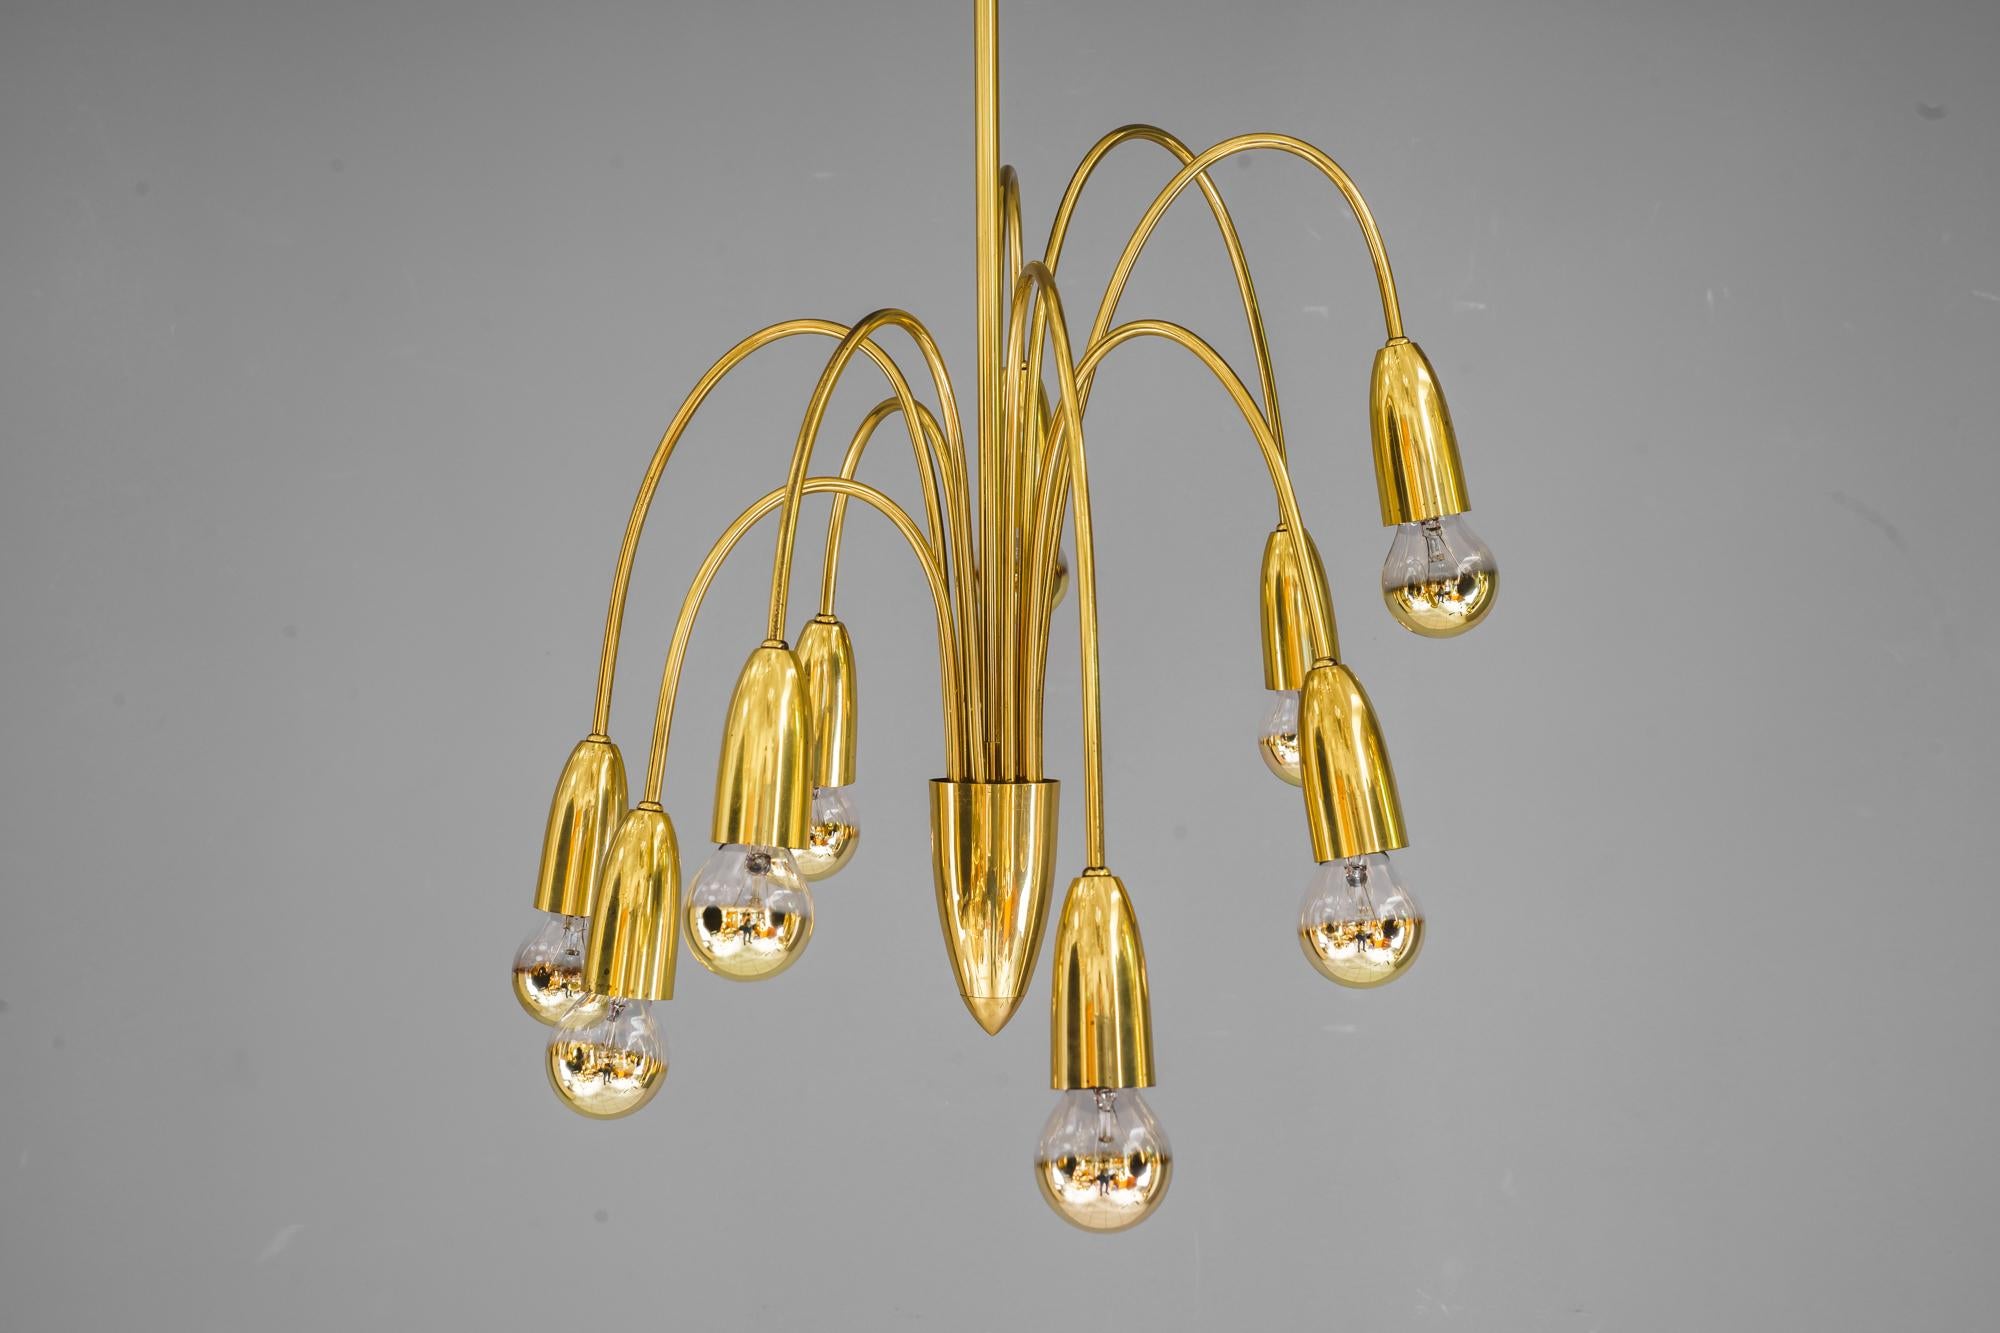 Rupert Nikoll Sputnik chandelier vienna around 1960s
Original condition.